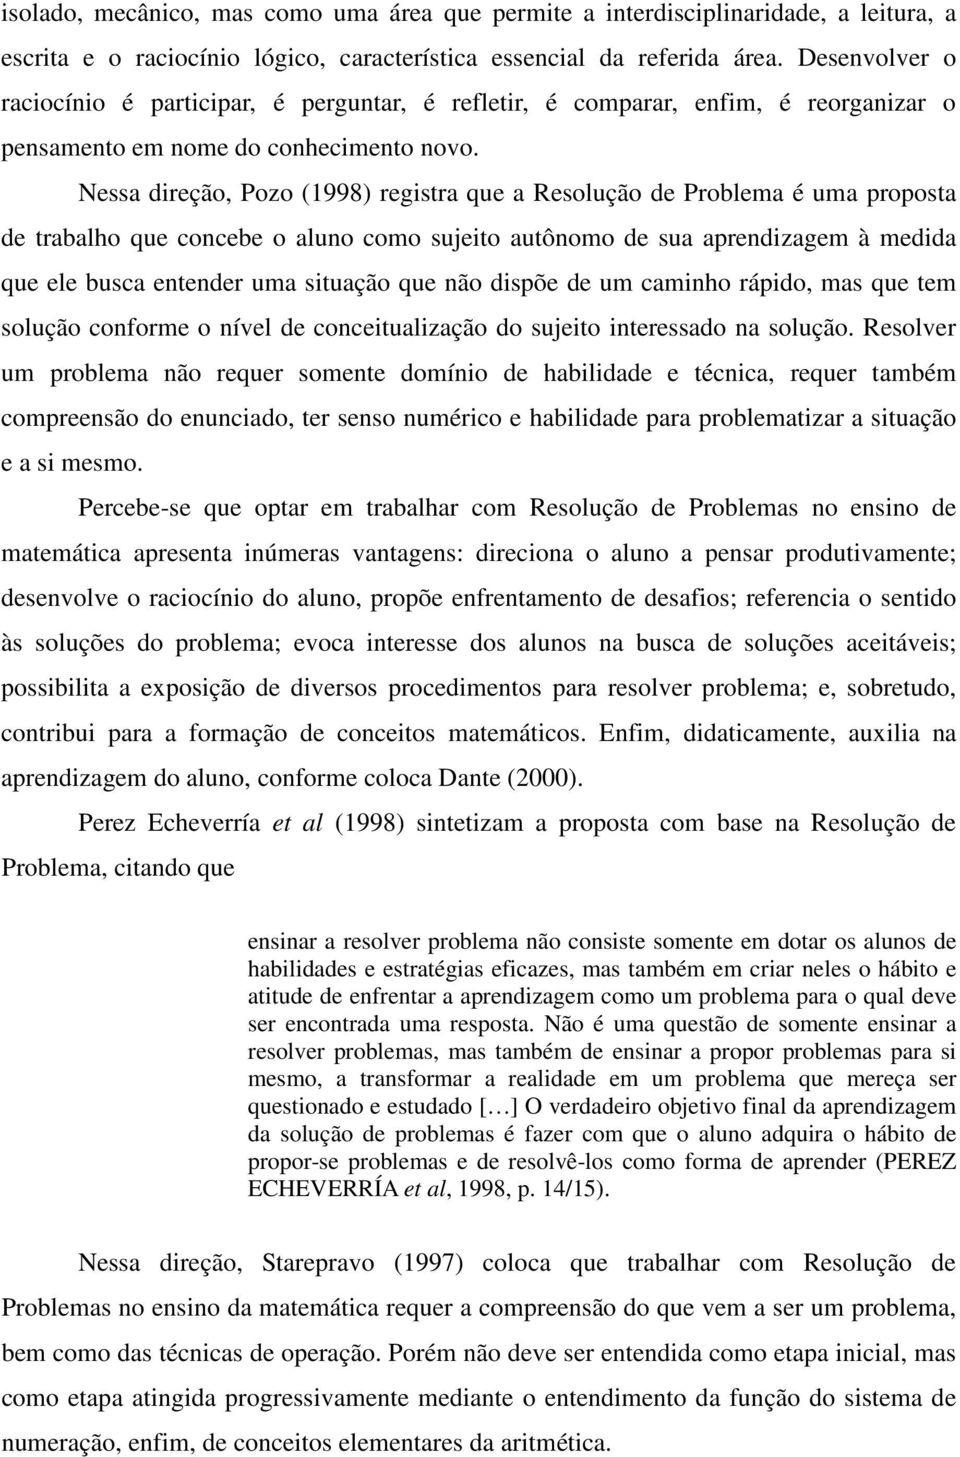 Nessa direção, Pozo (1998) registra que a Resolução de Problema é uma proposta de trabalho que concebe o aluno como sujeito autônomo de sua aprendizagem à medida que ele busca entender uma situação